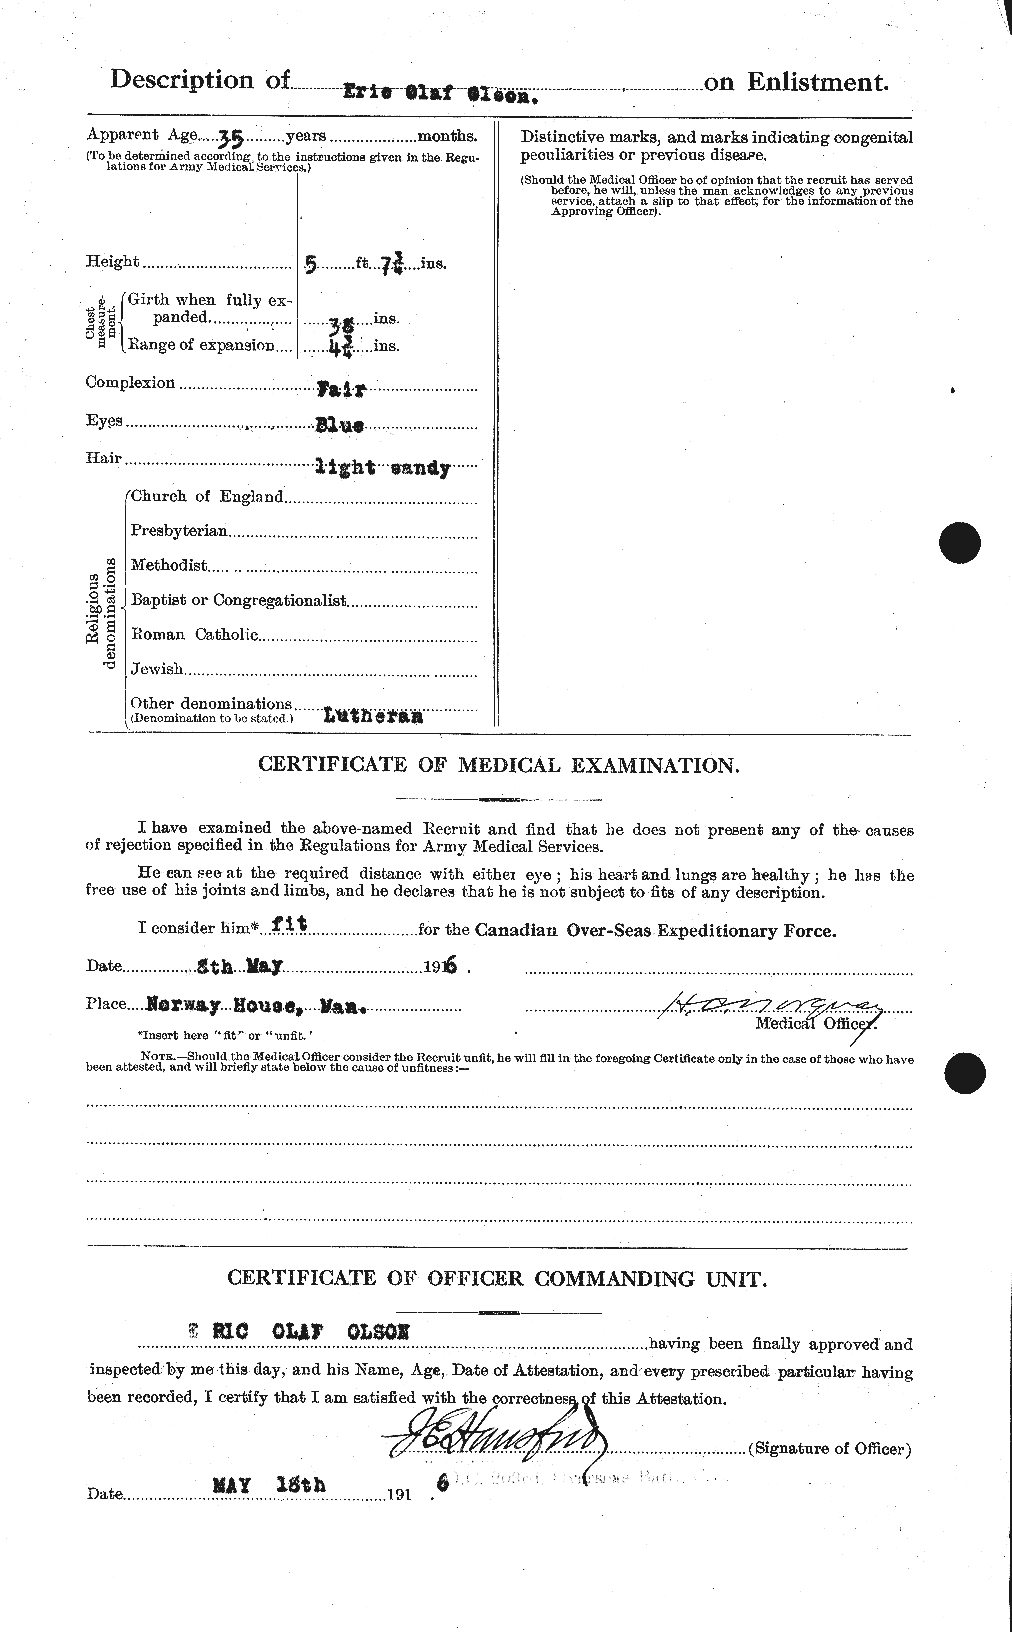 Dossiers du Personnel de la Première Guerre mondiale - CEC 557199b